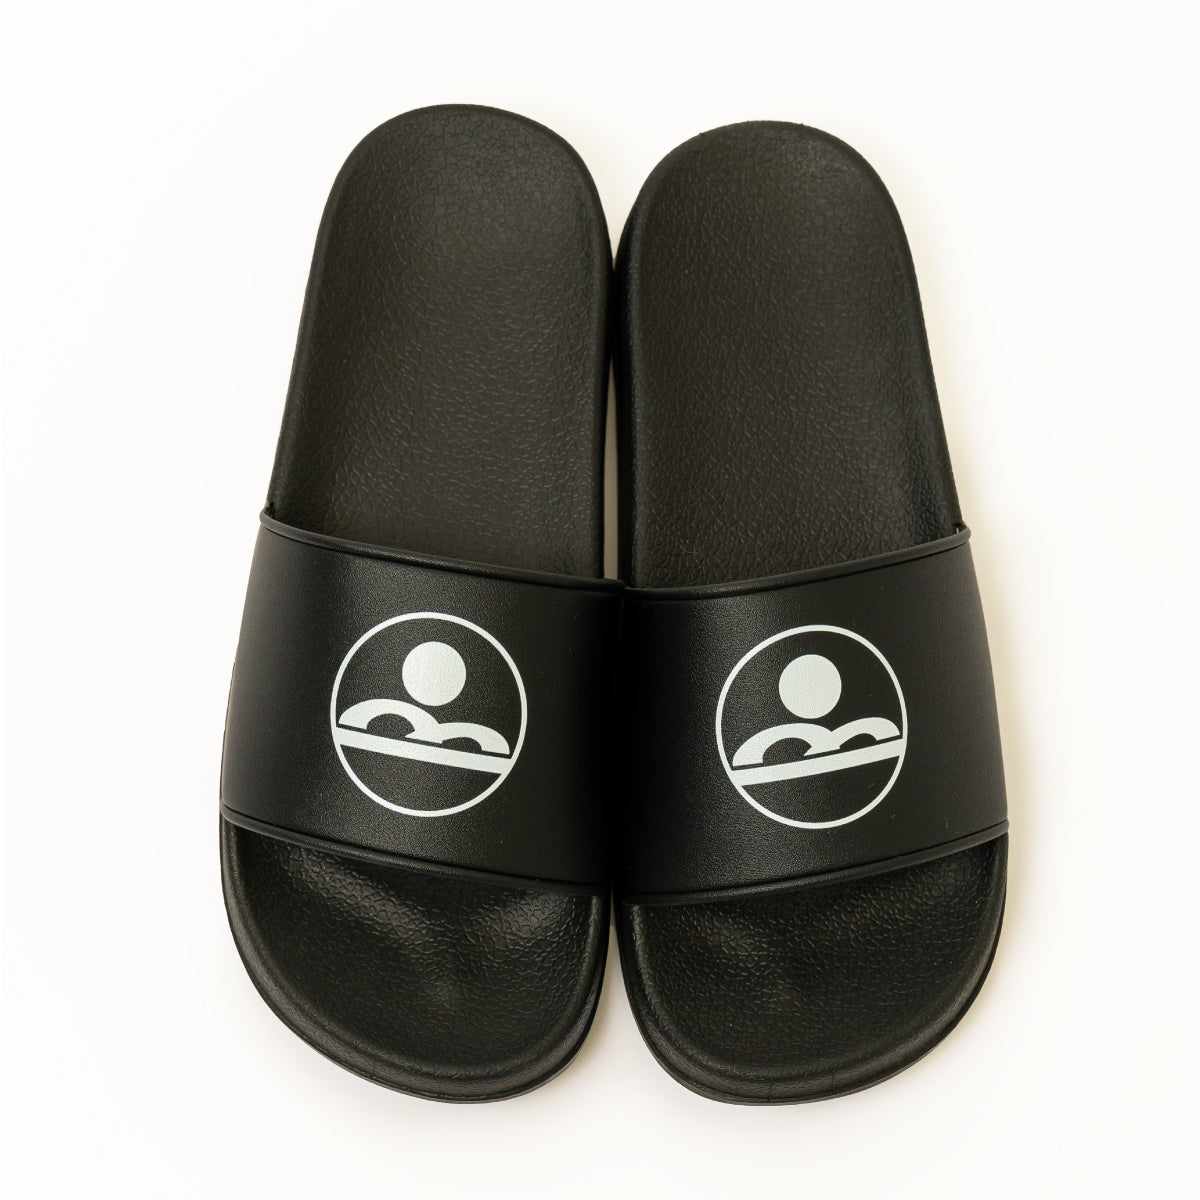 Chillax logo shower sandals